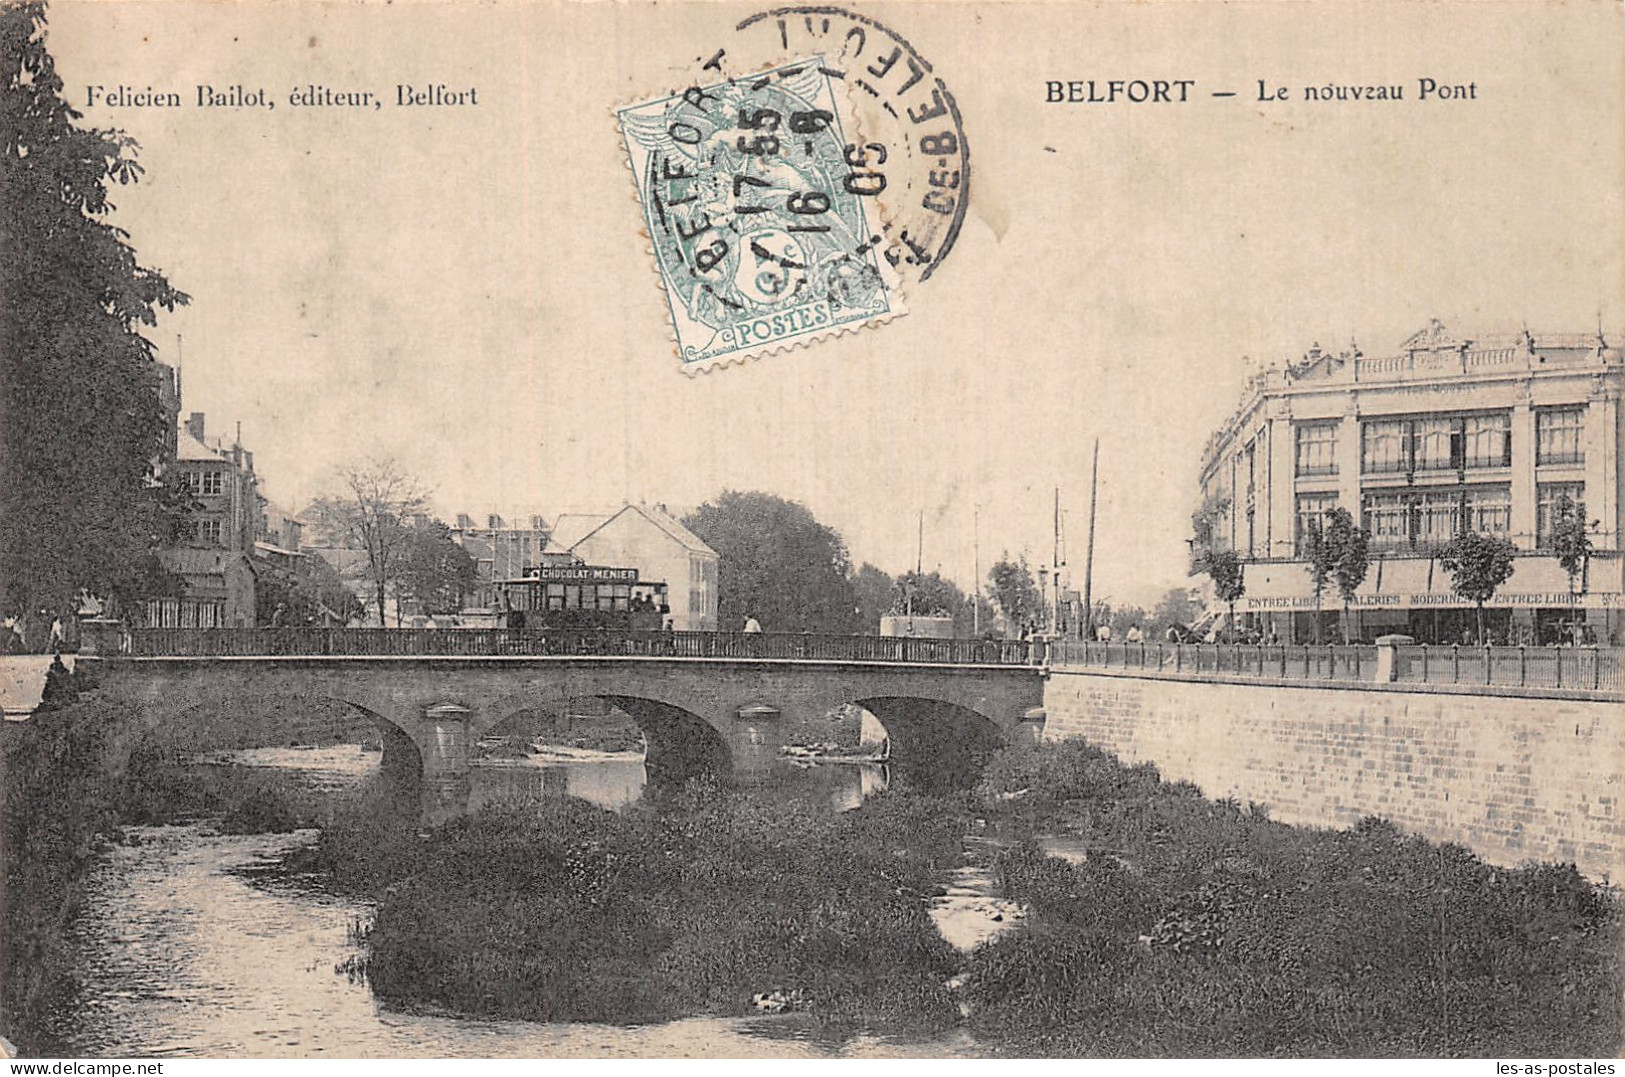 90 BELFORT LE NOUVEAU PONT - Belfort - City